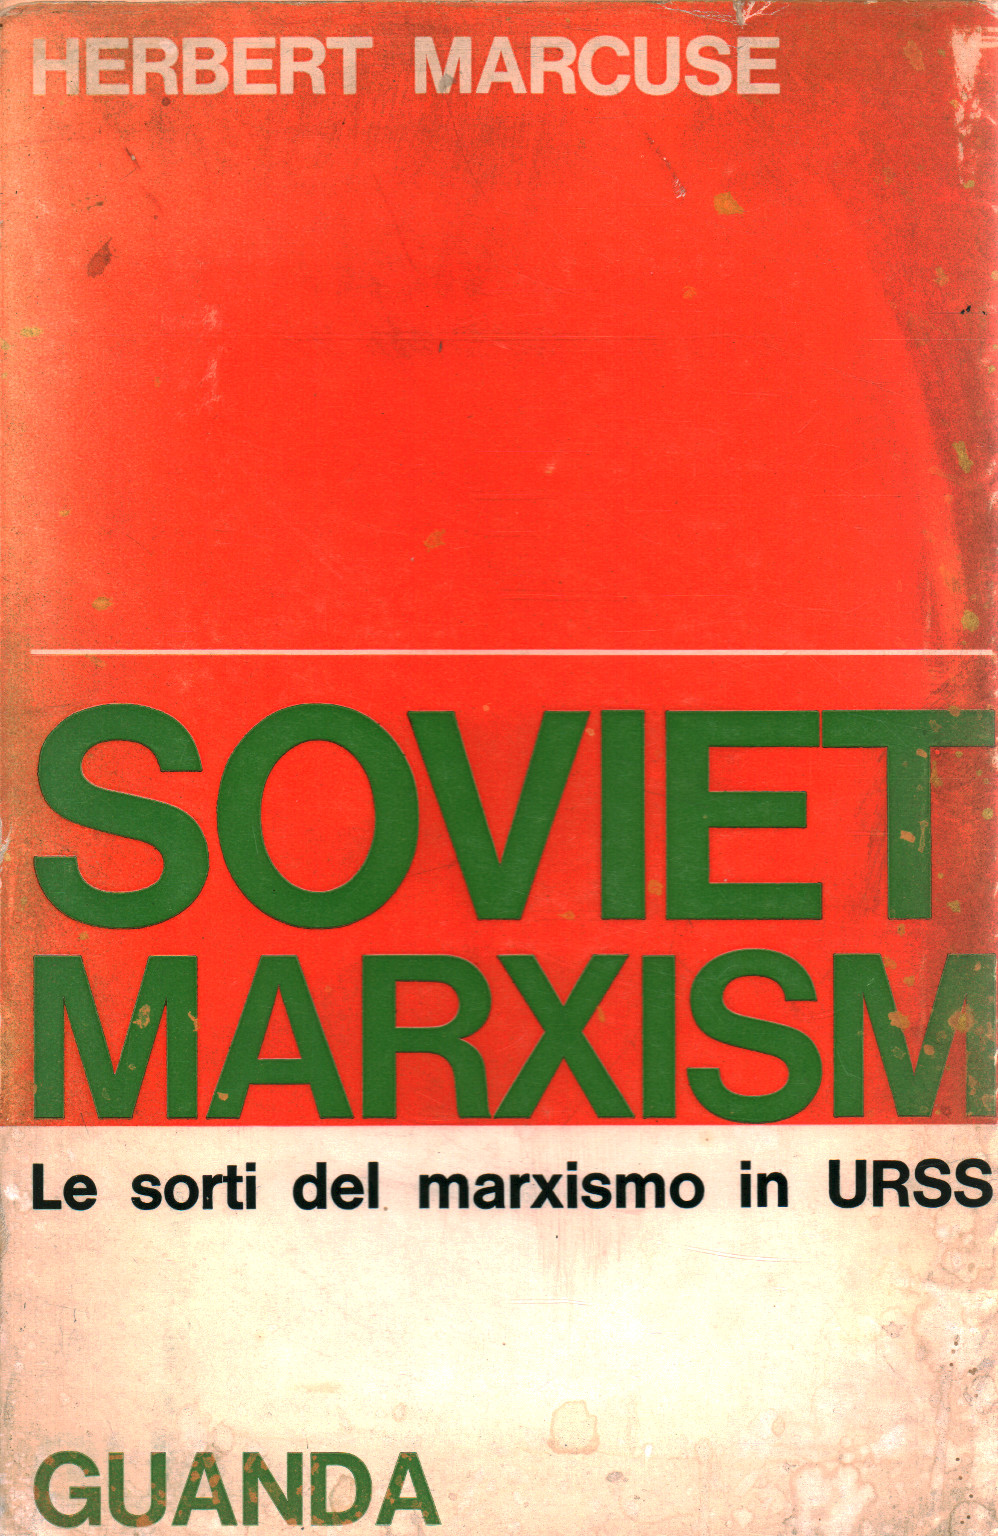 Soviet Marxism, s.a.